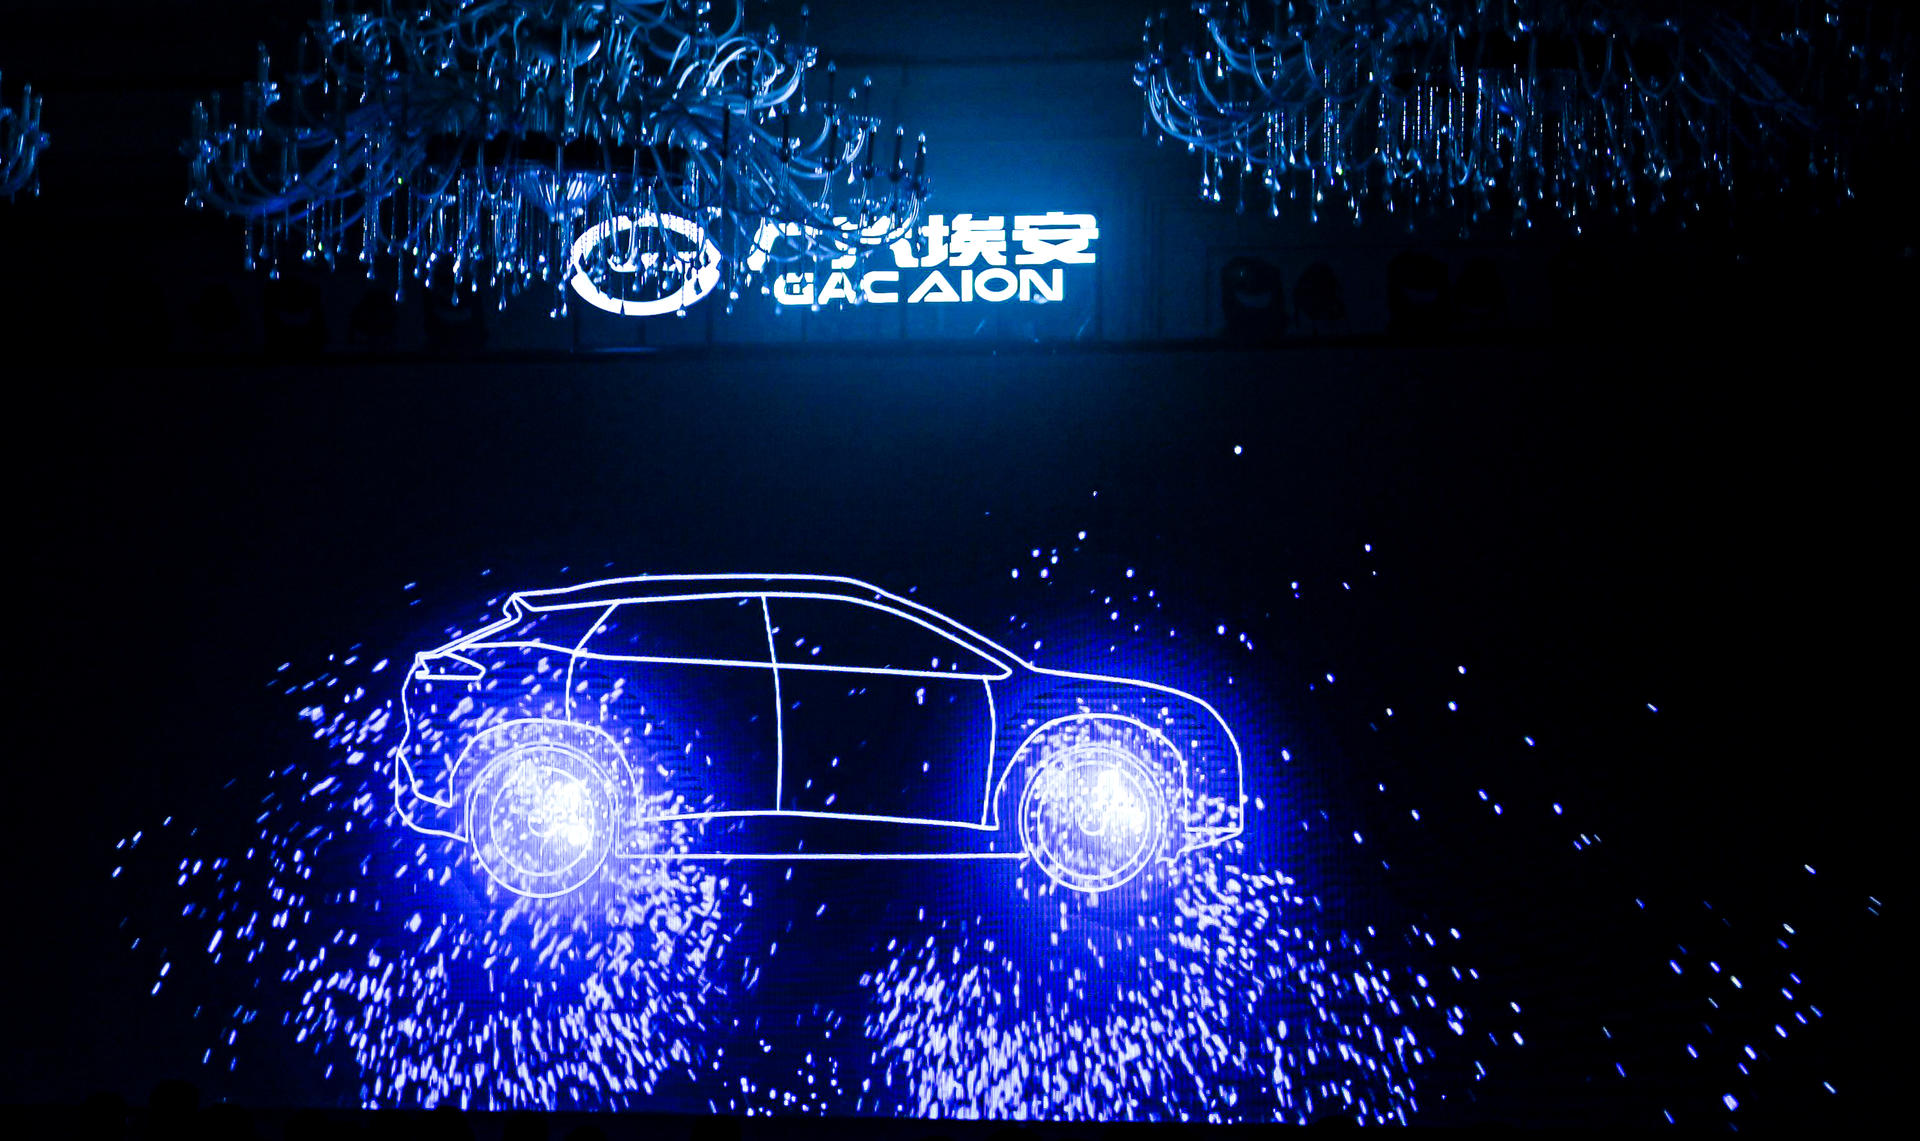 广汽埃安经销商峰会活动策划现场的光绘签到互动装置很有亮点